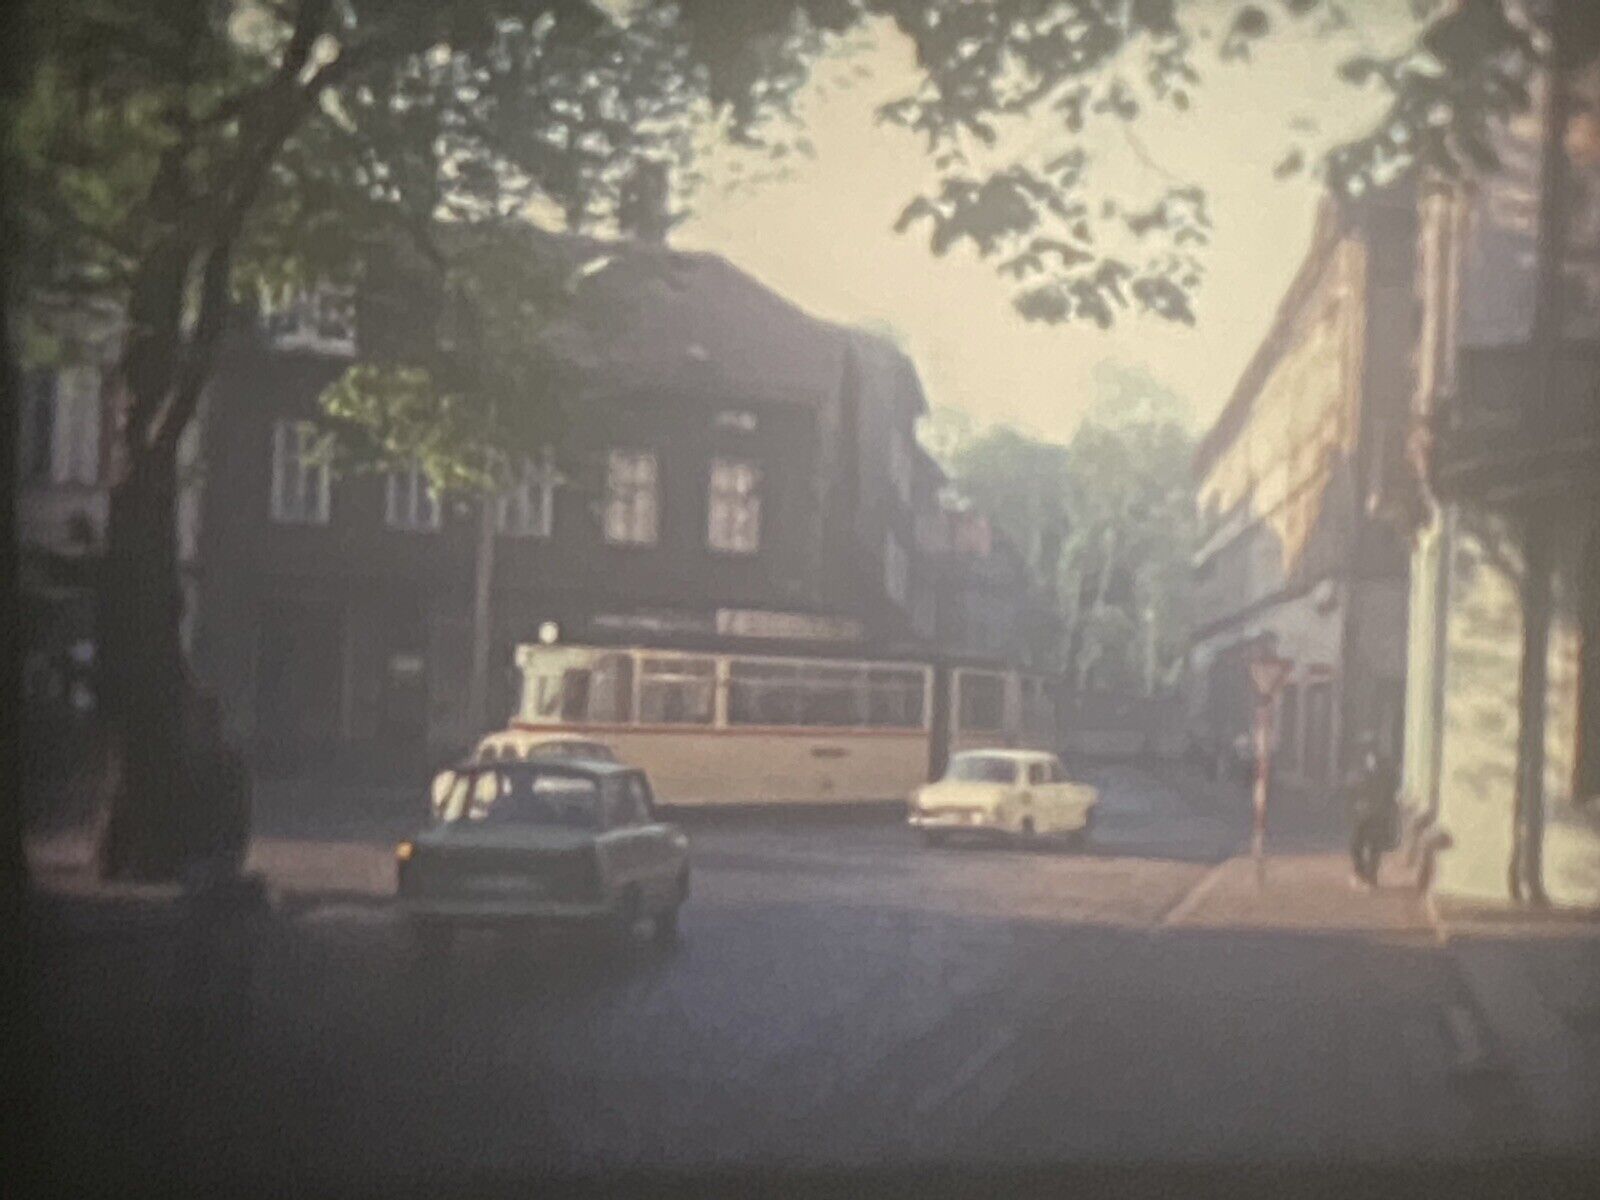 2 Vintage East Germany German Electric Trains Street Scenes Super 8mm Home Movie